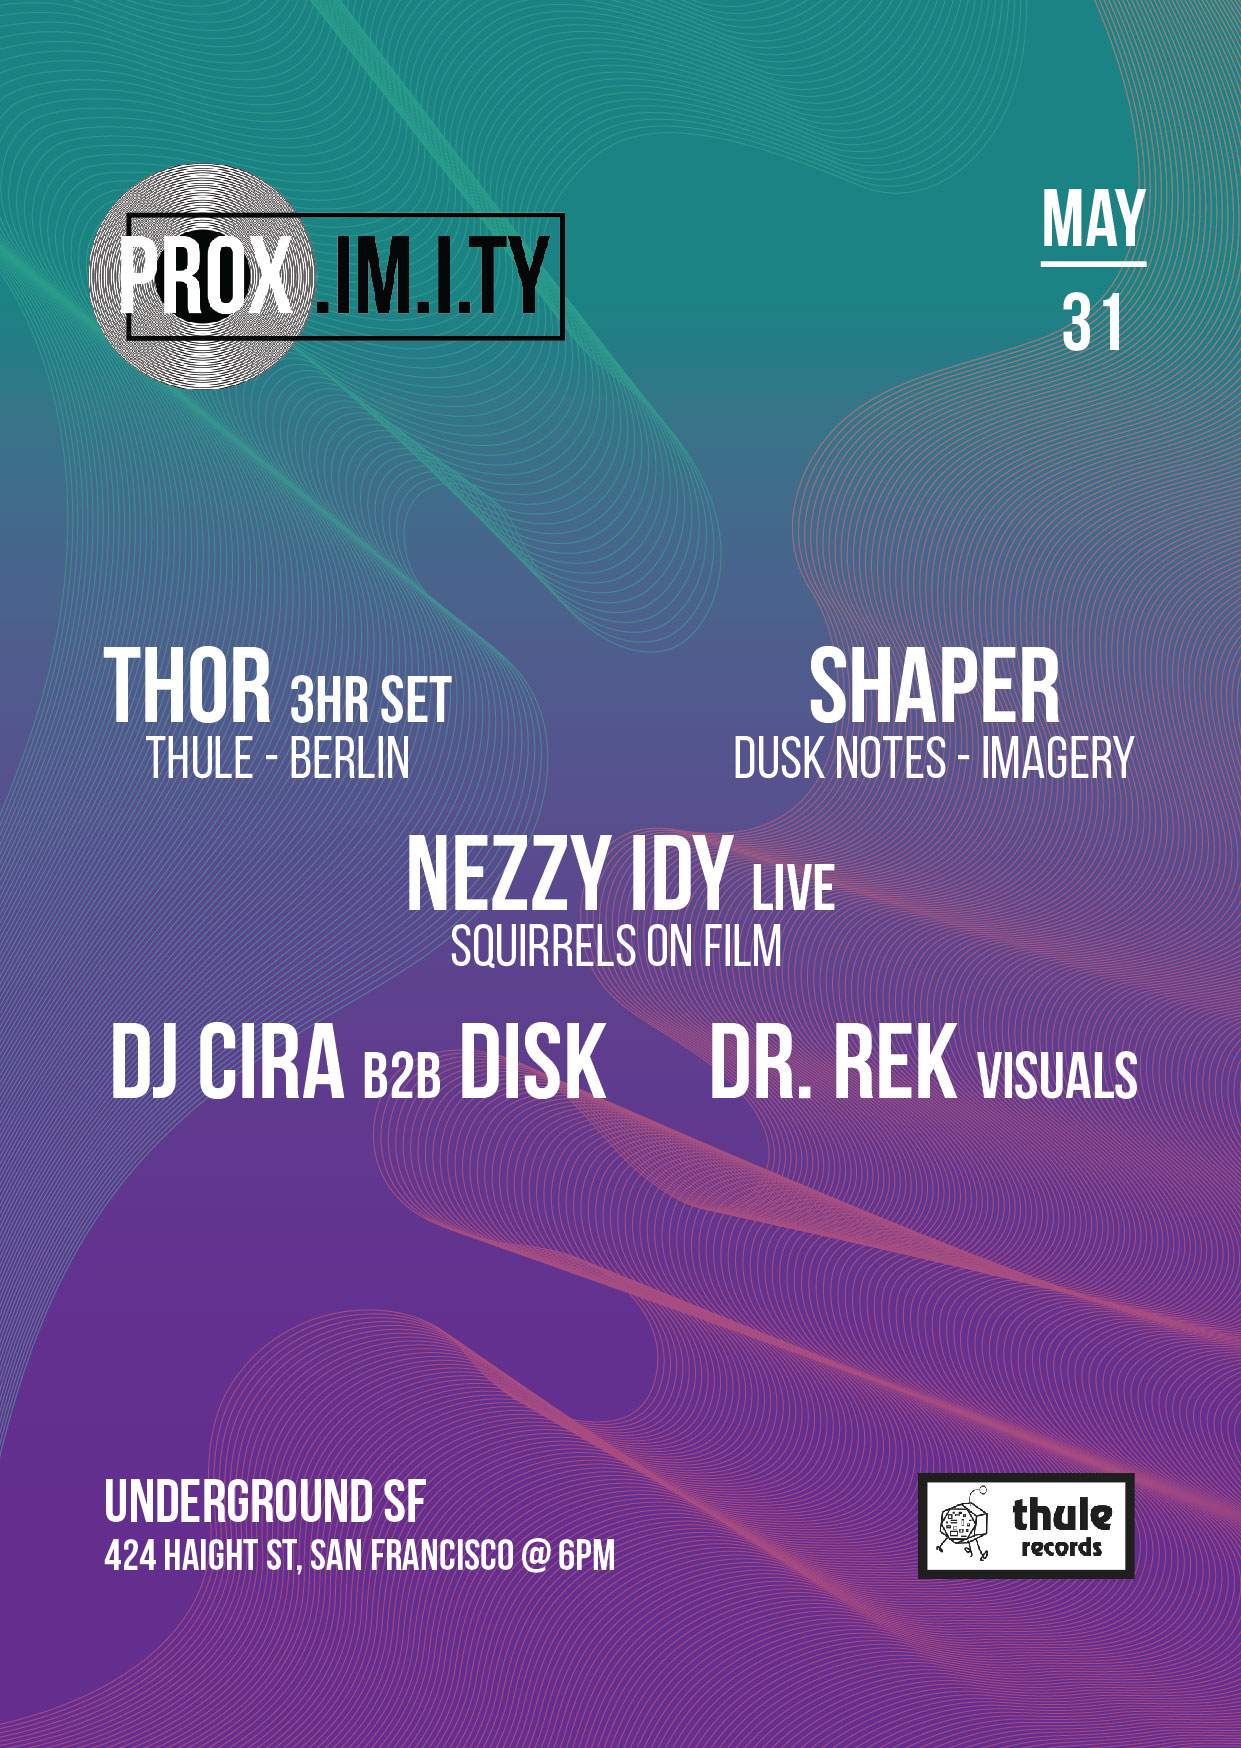 PROX. w// Thor - Shaper - Nezzy Idy LIVE - DJ Cira b2b  Disk - Visuals: Dr.Rek - Página frontal